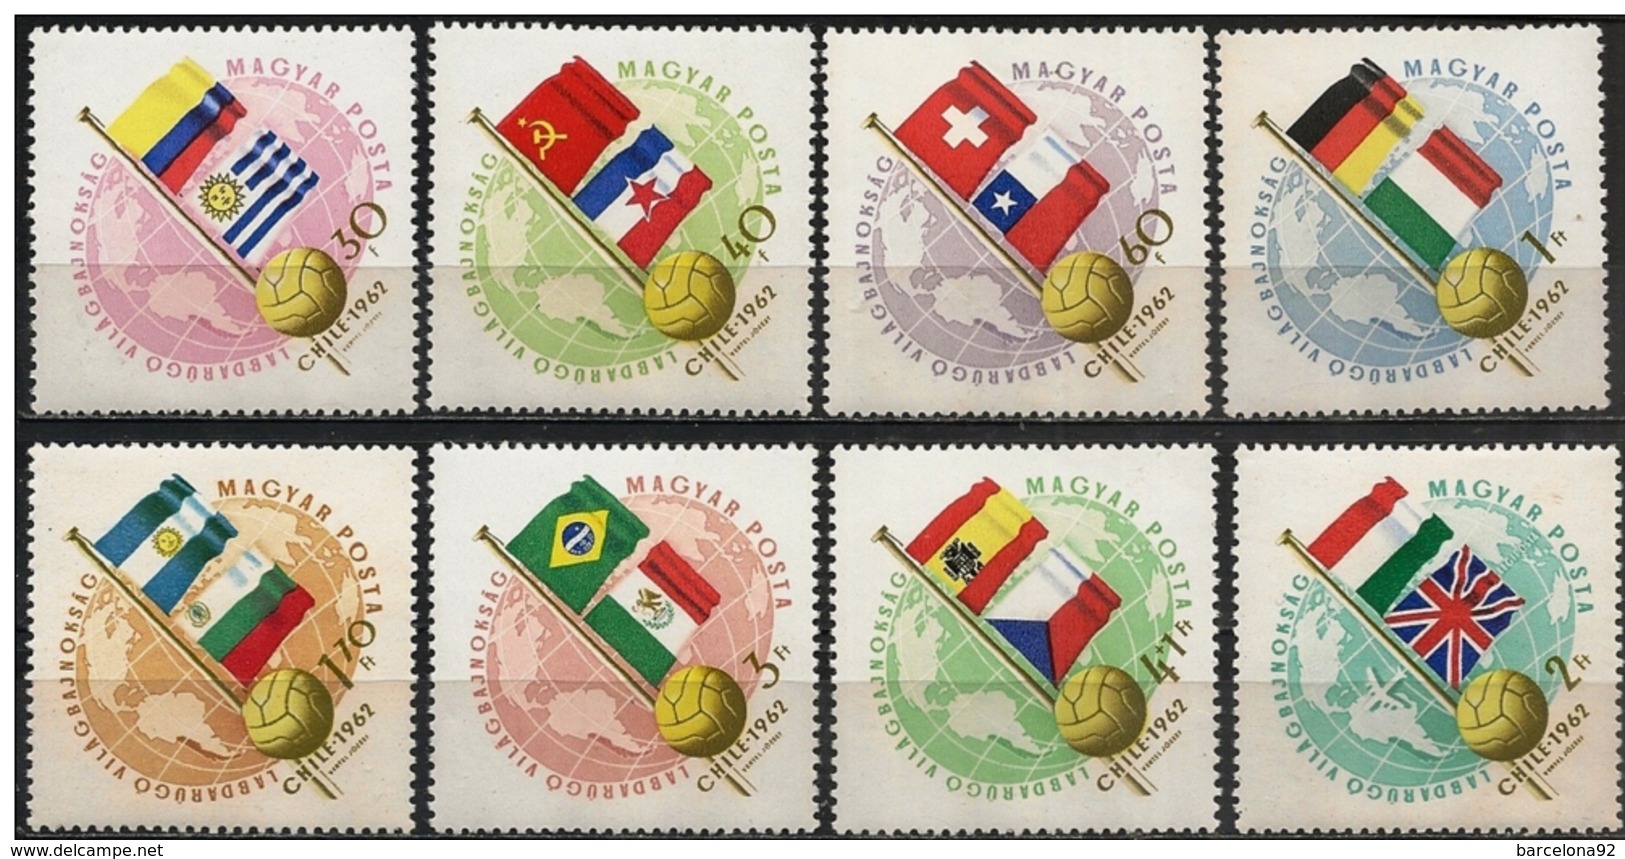 Hungria - Mundiales Chile 1962 - 1505/11 + A/231 - Nuevo - 1962 – Chili